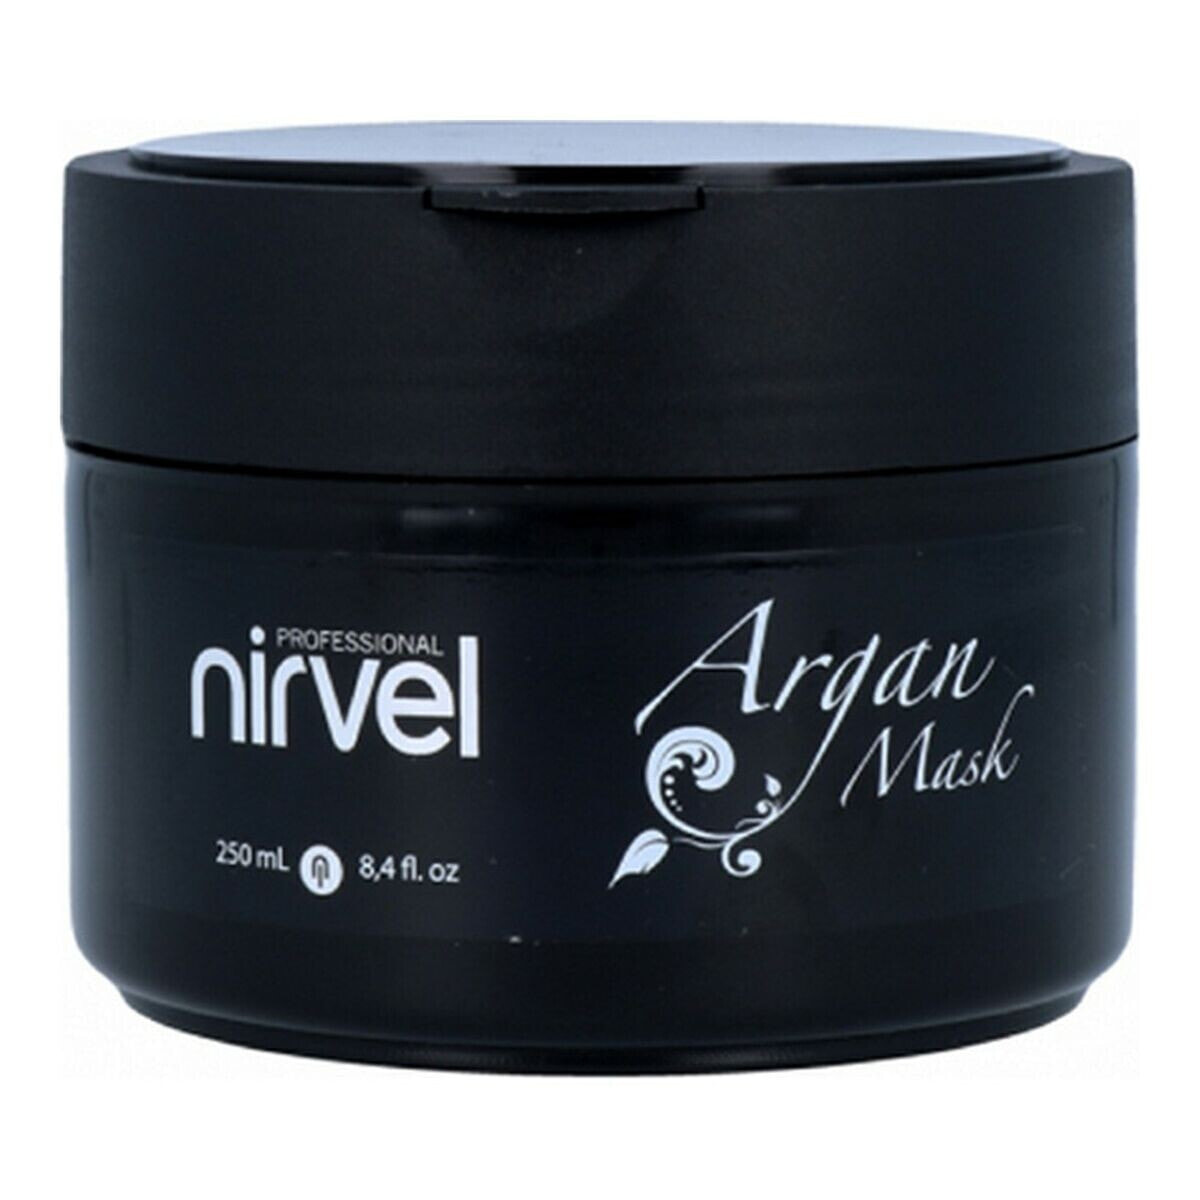 Капиллярная маска Care Argan Nirvel (250 ml)